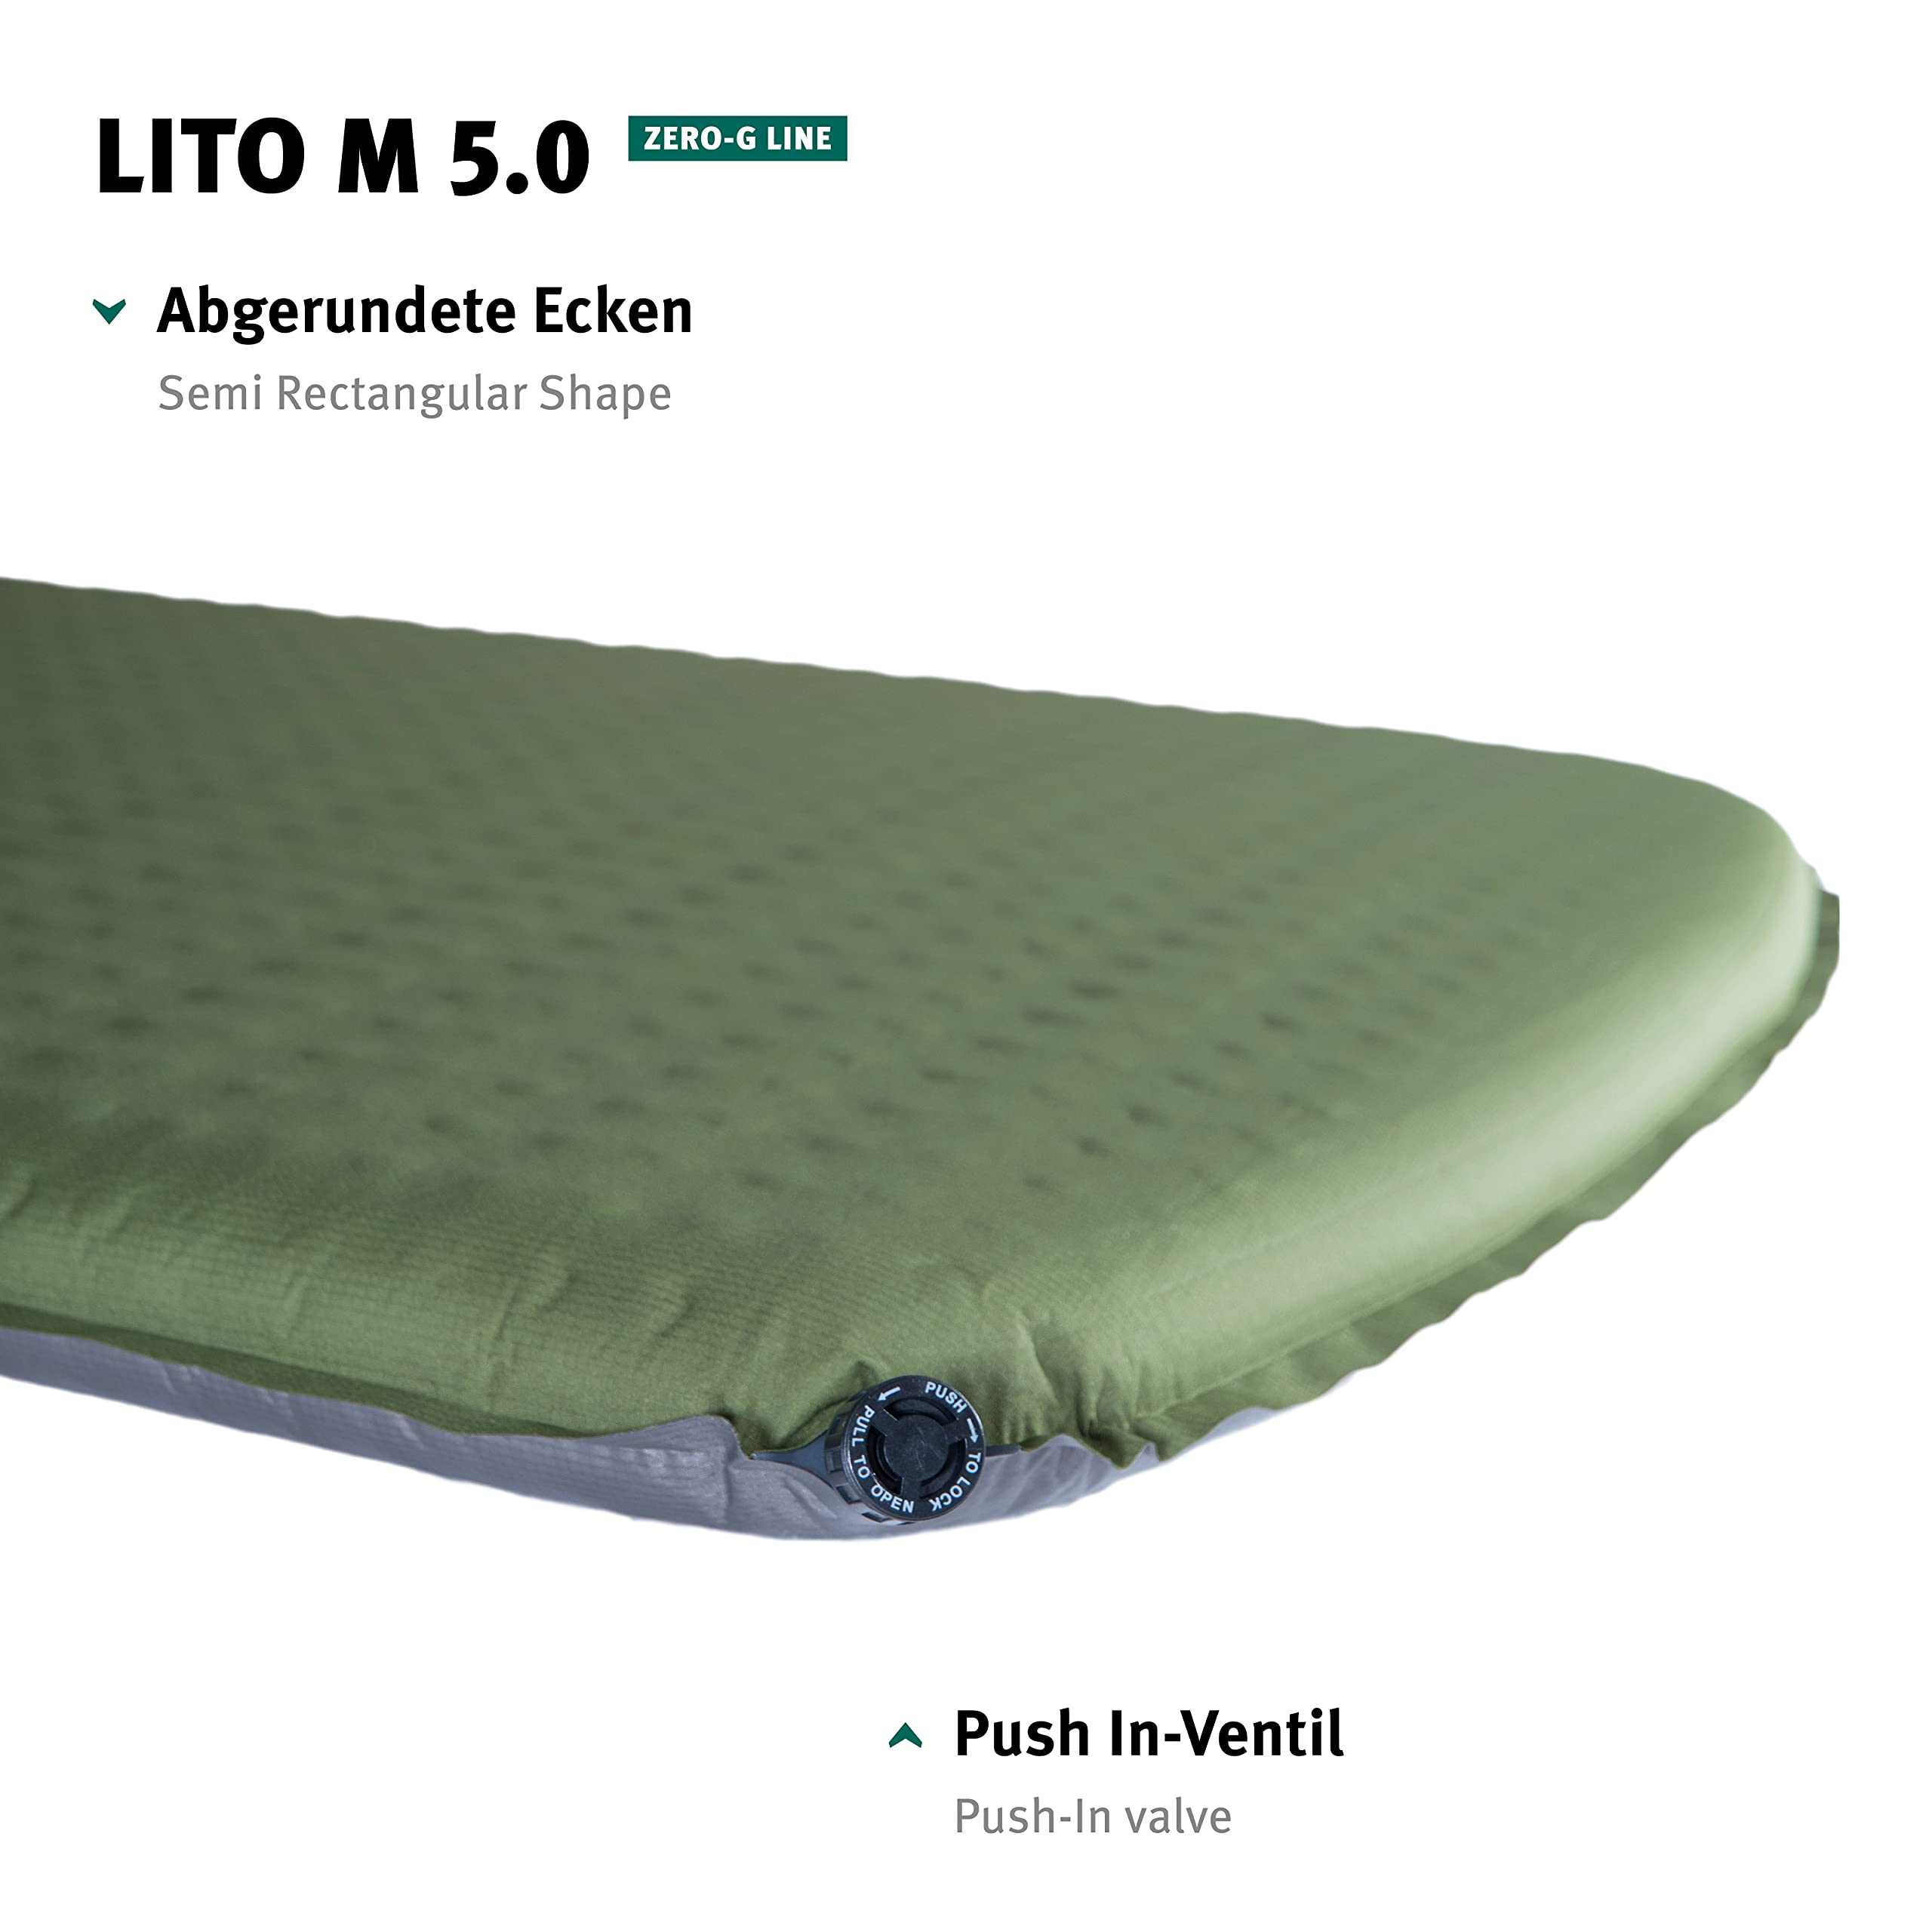 Wechsel Tents Selbstaufblasbare Isomatte – Lito Serie Lito M 5.0